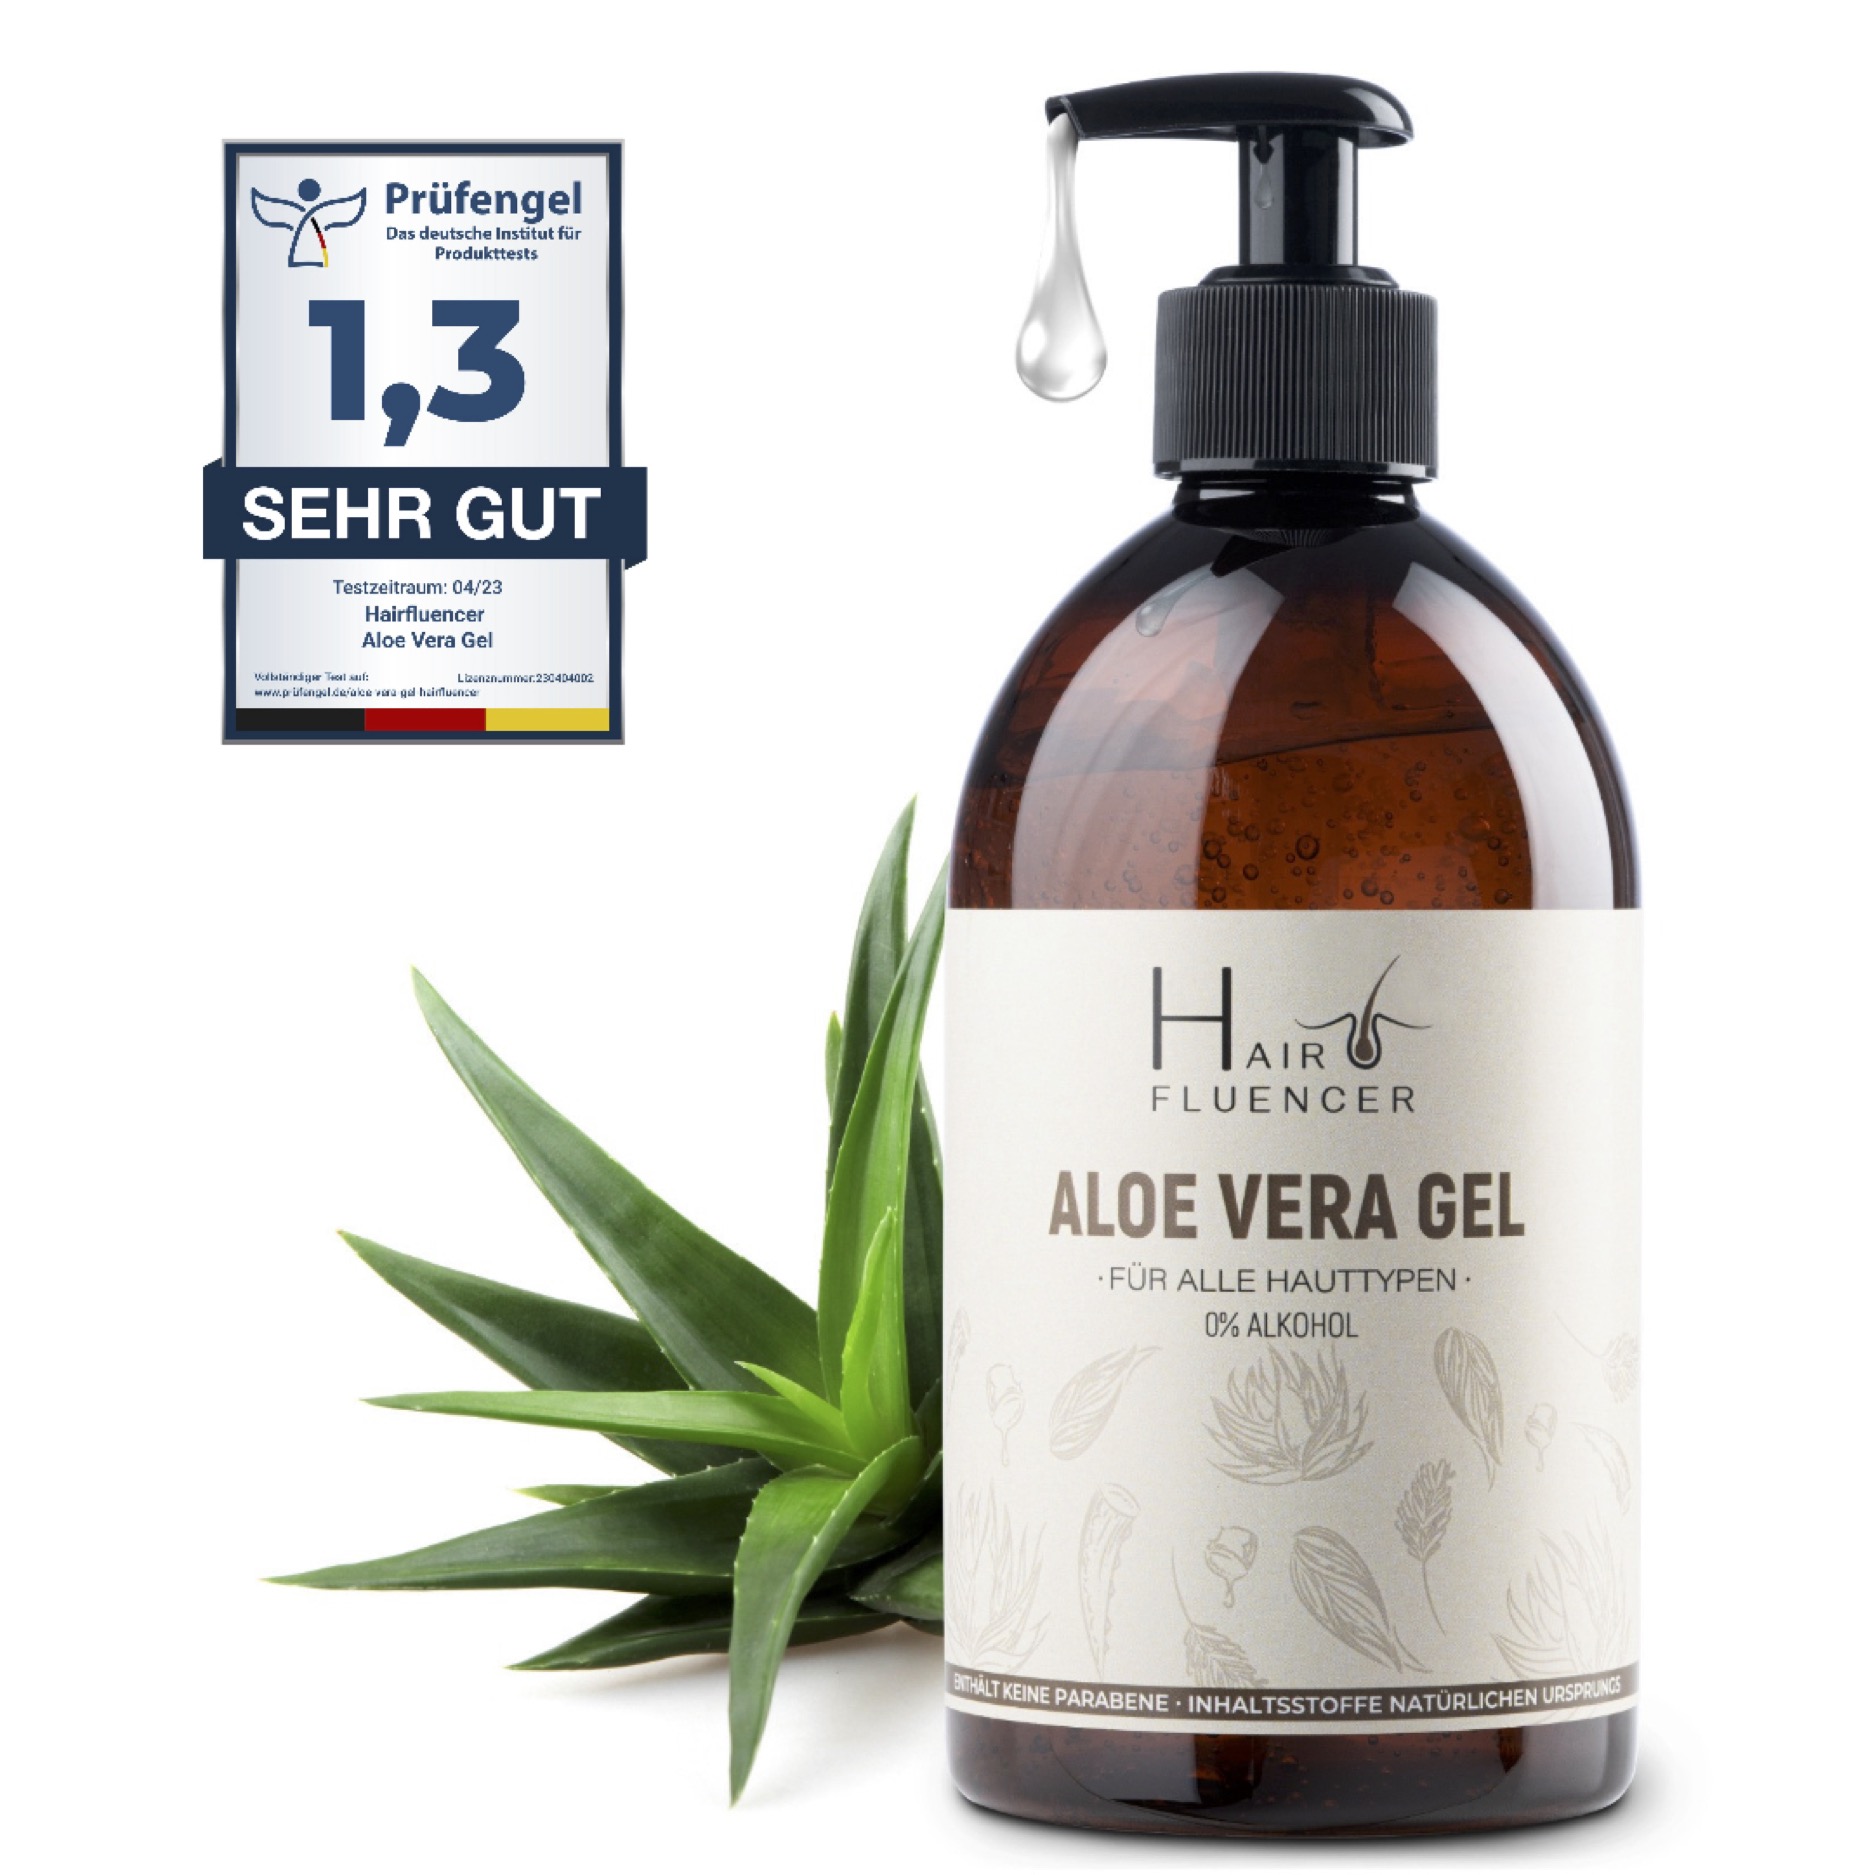 Hairfluencer Aloe Vera Gel aus 100% Blattsaft (250ml) Bio Aloe Vera Gel zur Pflege von Haut und Haare - feuchtigkeitsspendend und entzündungshemmend - Aloe Vera gegen Pickel und Akne